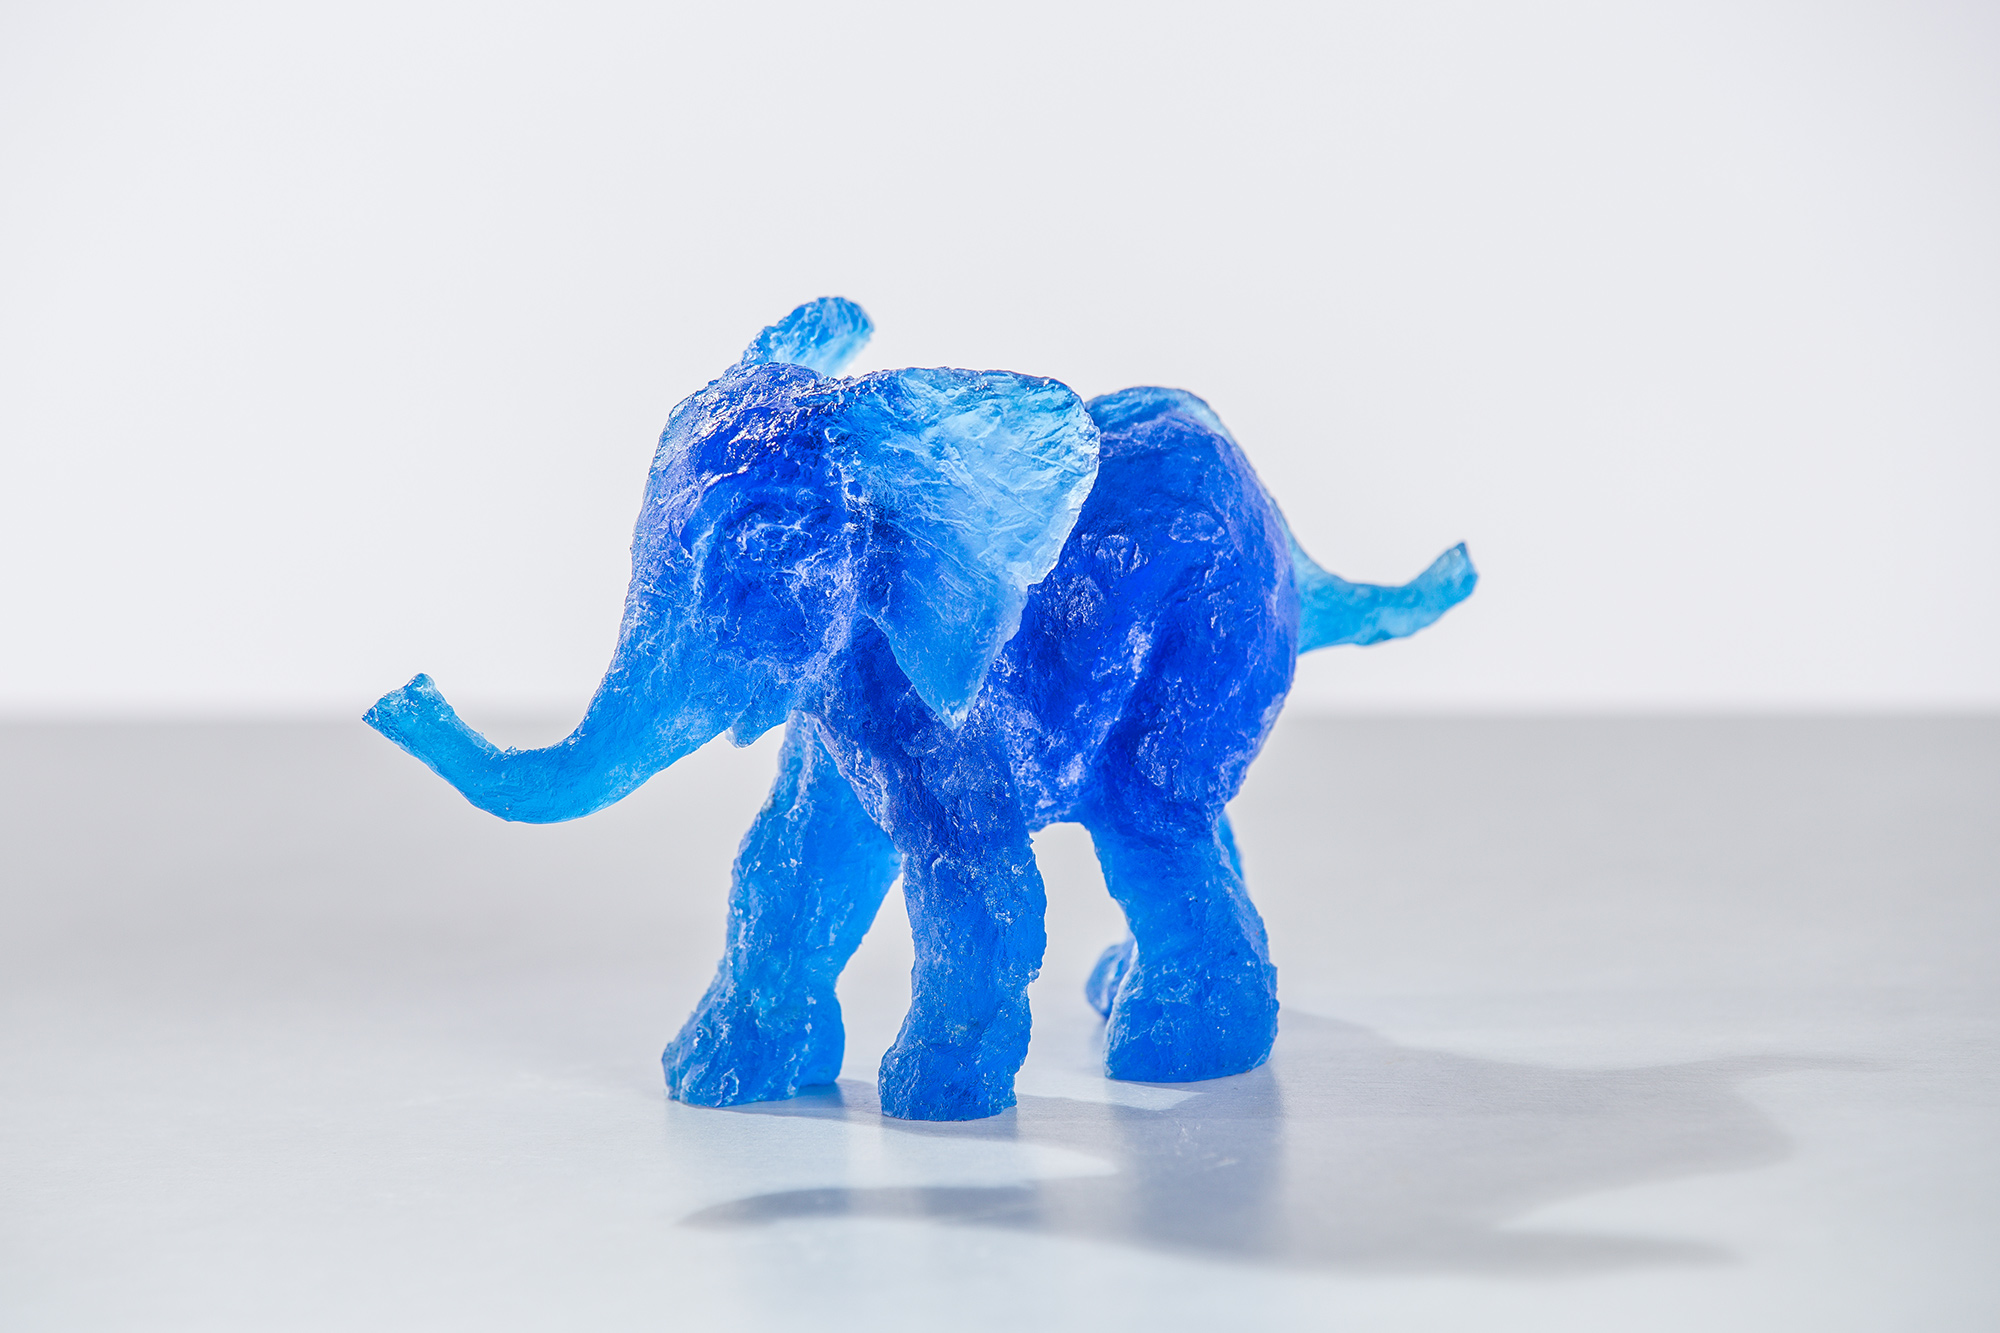 Tamu der kleine blaue Elefant (2015)